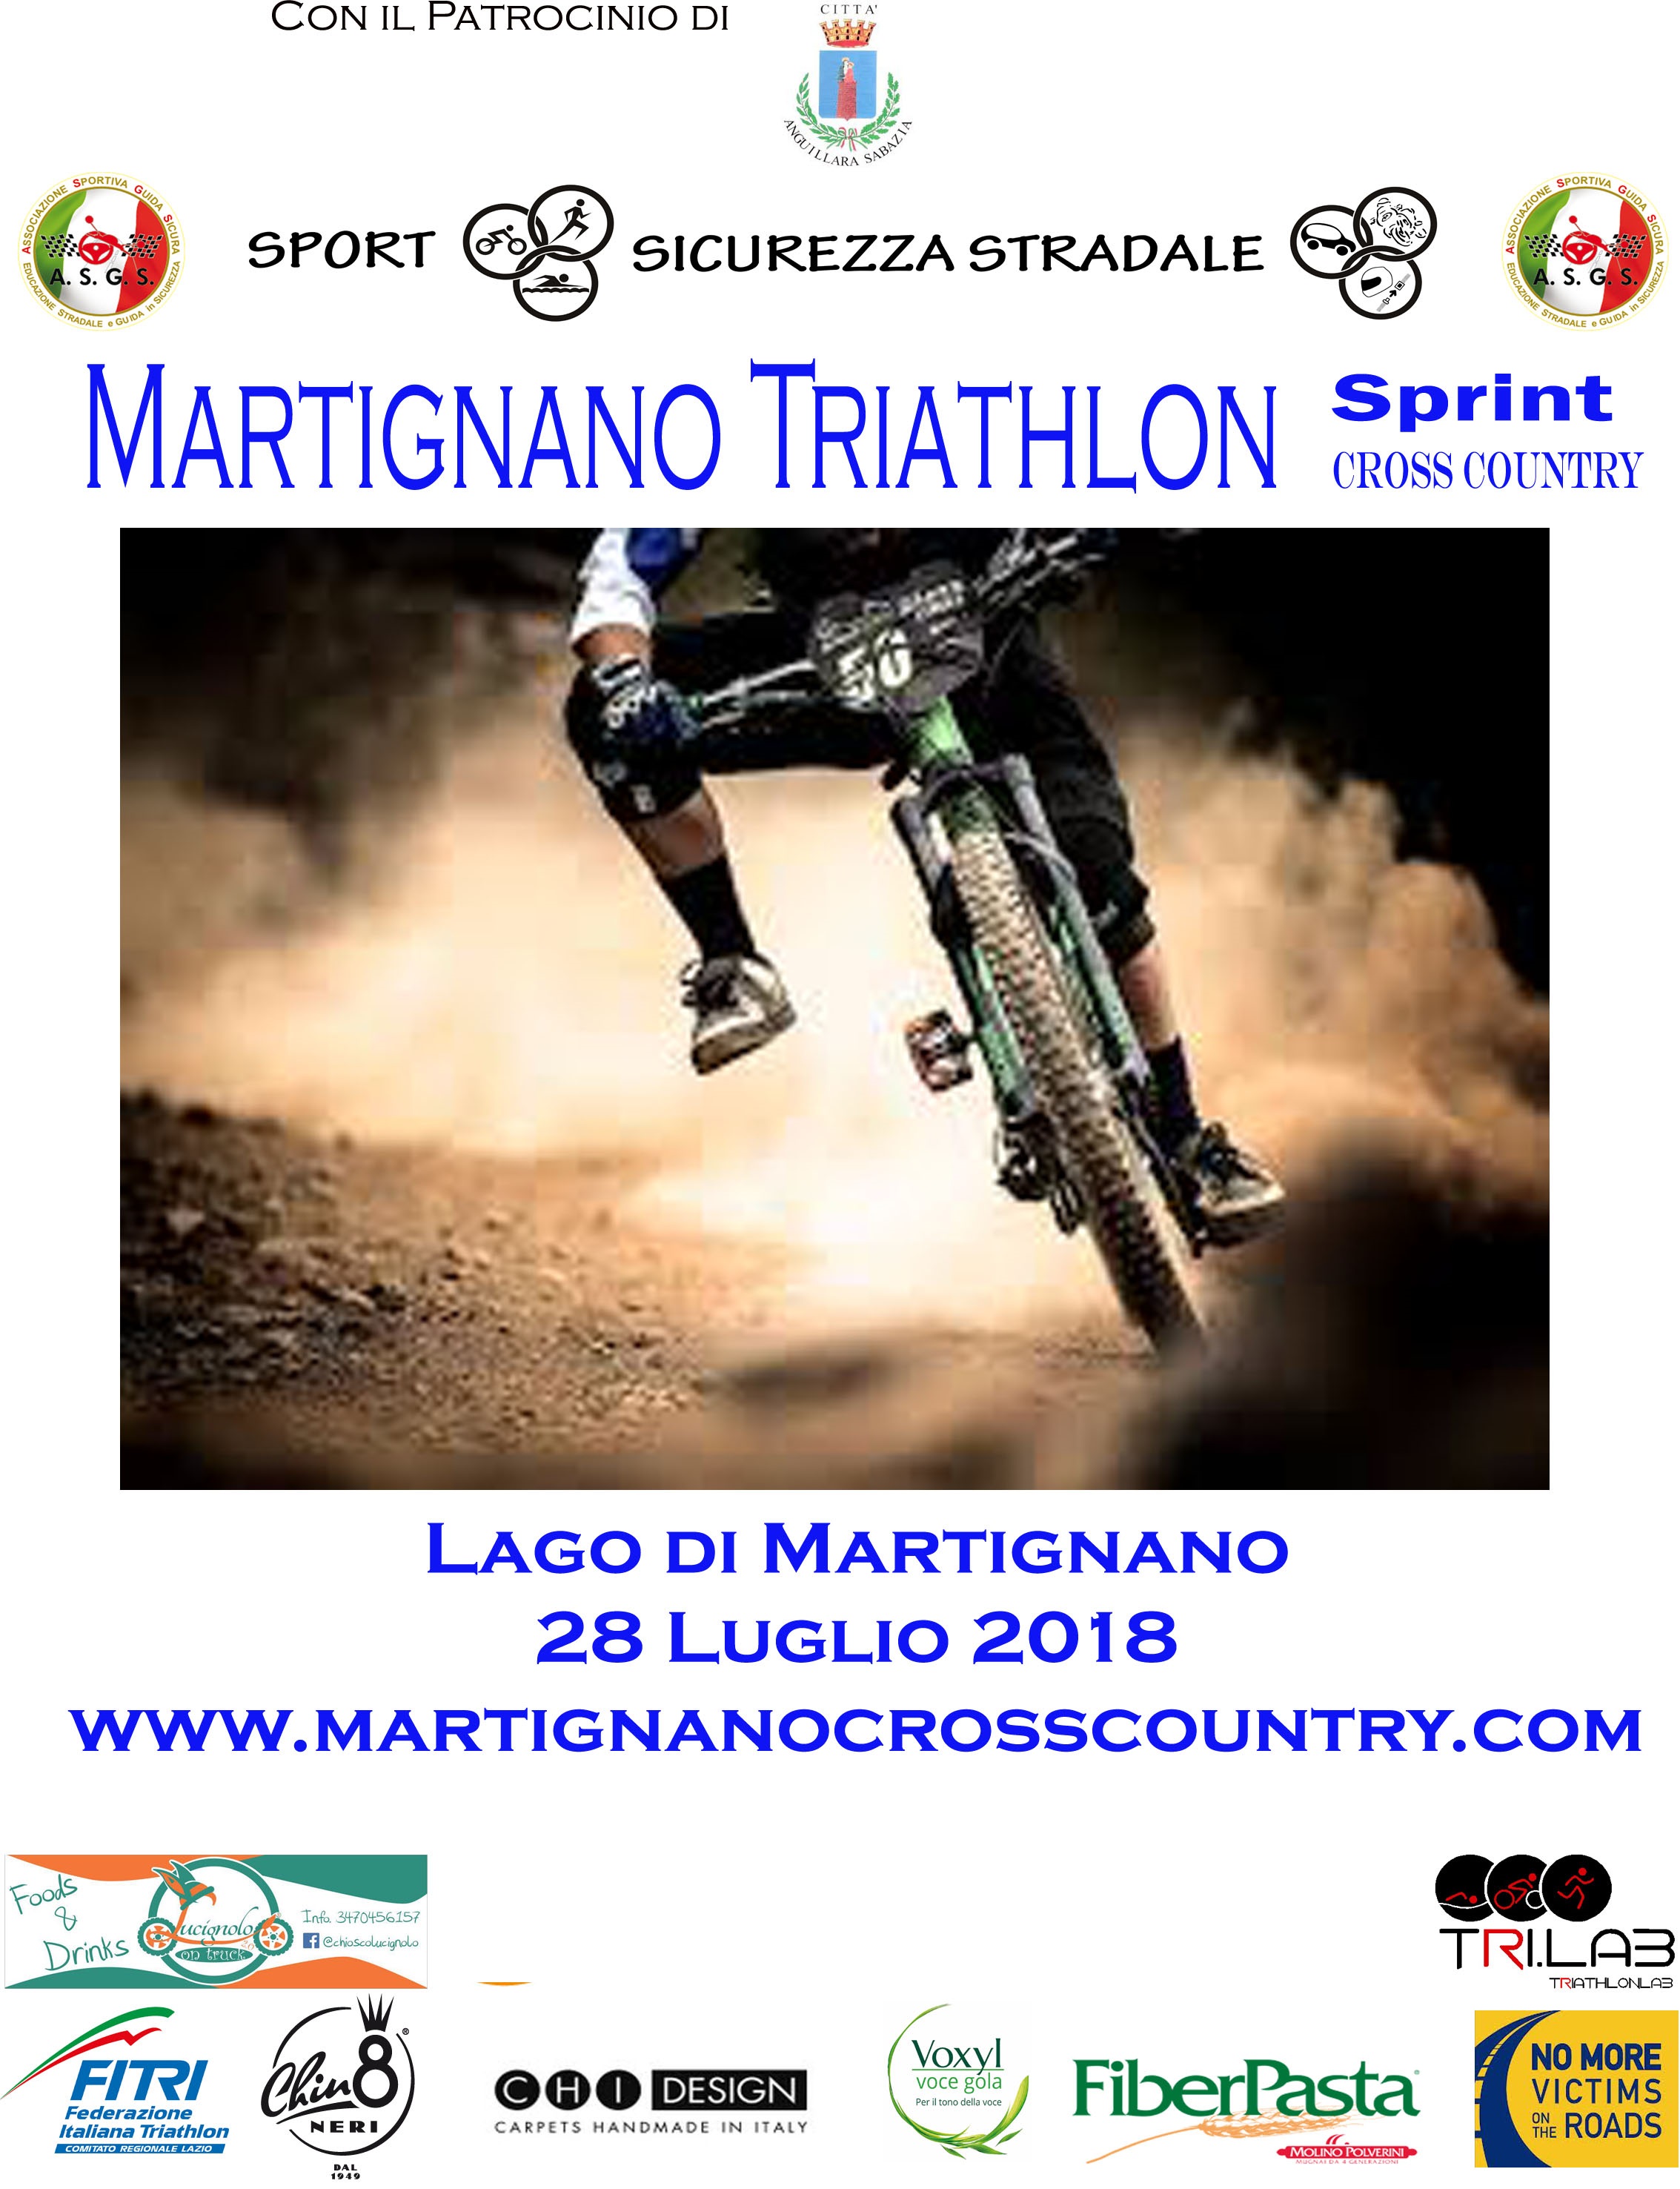 Triathlon Cross Country MARTIGNANO